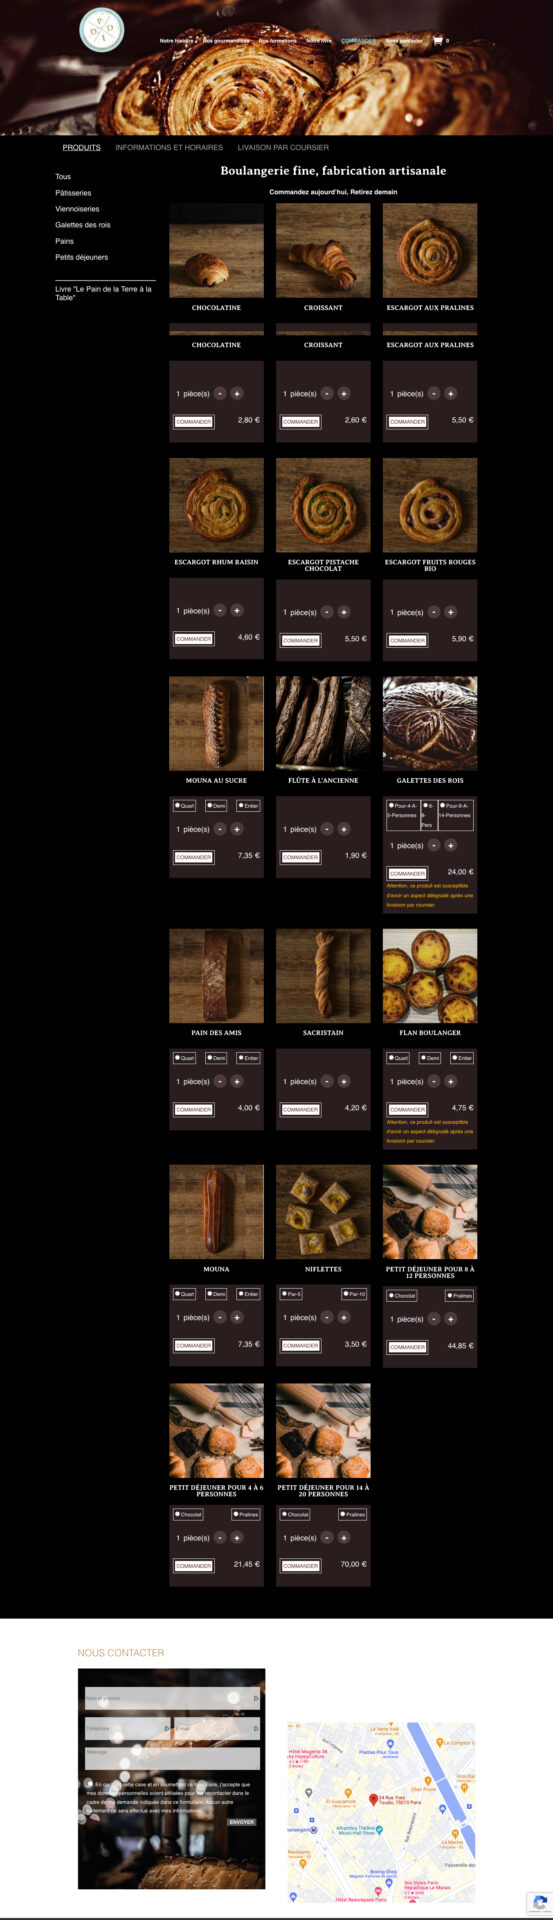 Site de vente en ligne Boulangerie Du pain et des idées